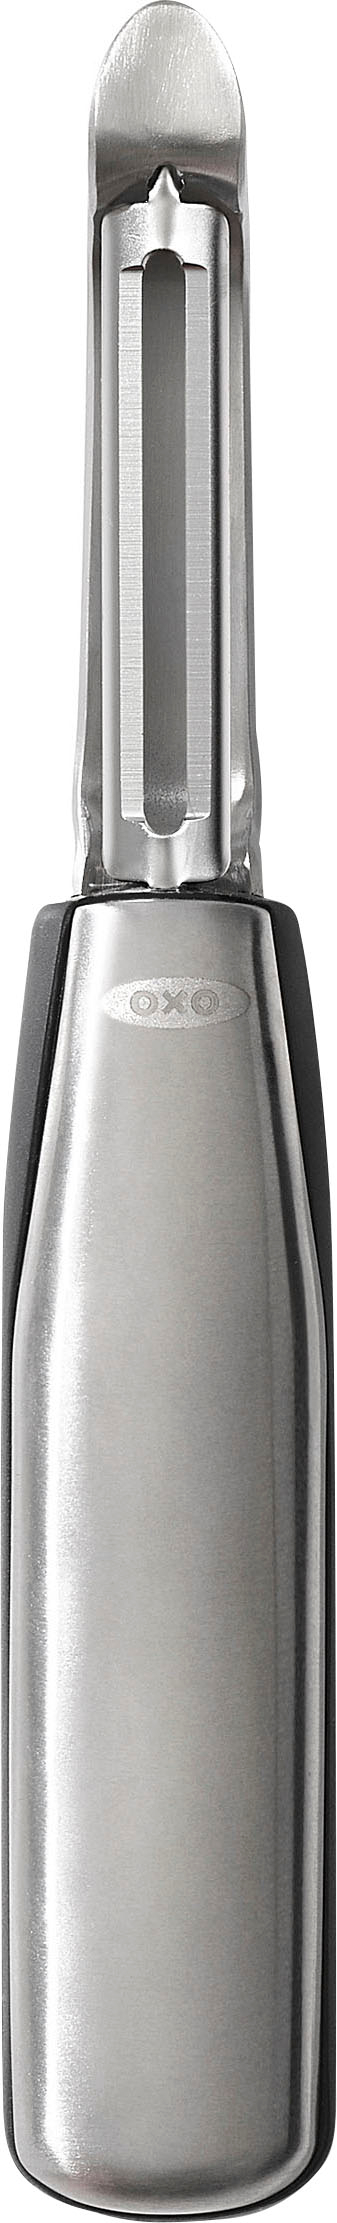 OXO STL 15 Piece Utensil Set Silver 3126300 - Best Buy